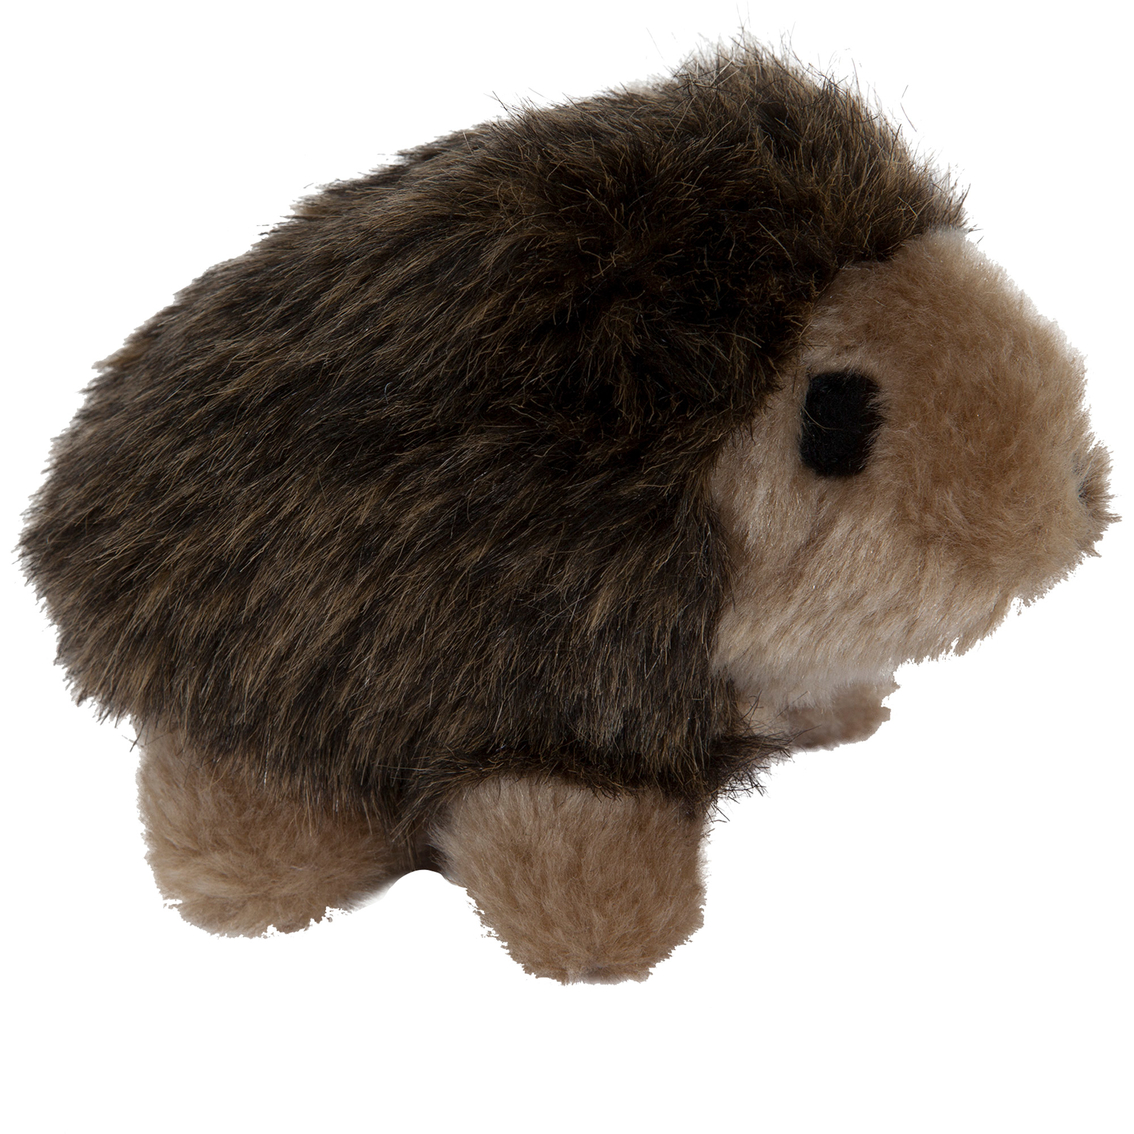 Petmate Zoobilee Plush Large Hedgehog Dog Toy - Image 2 of 2